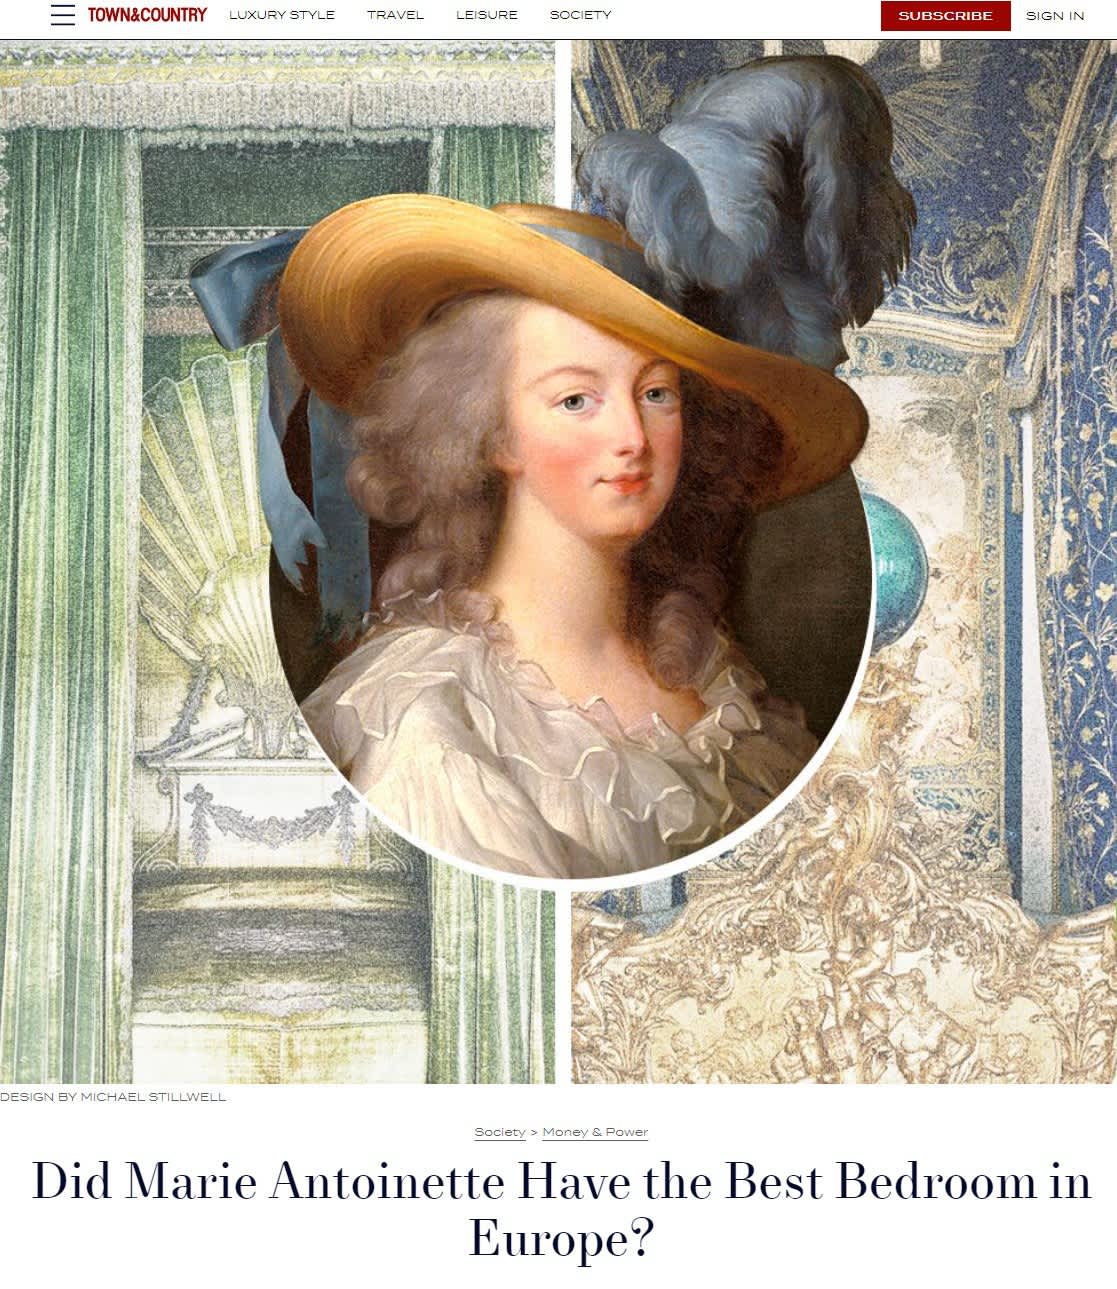 Did Marie Antoinette Have the Best Bedroom in Europe?